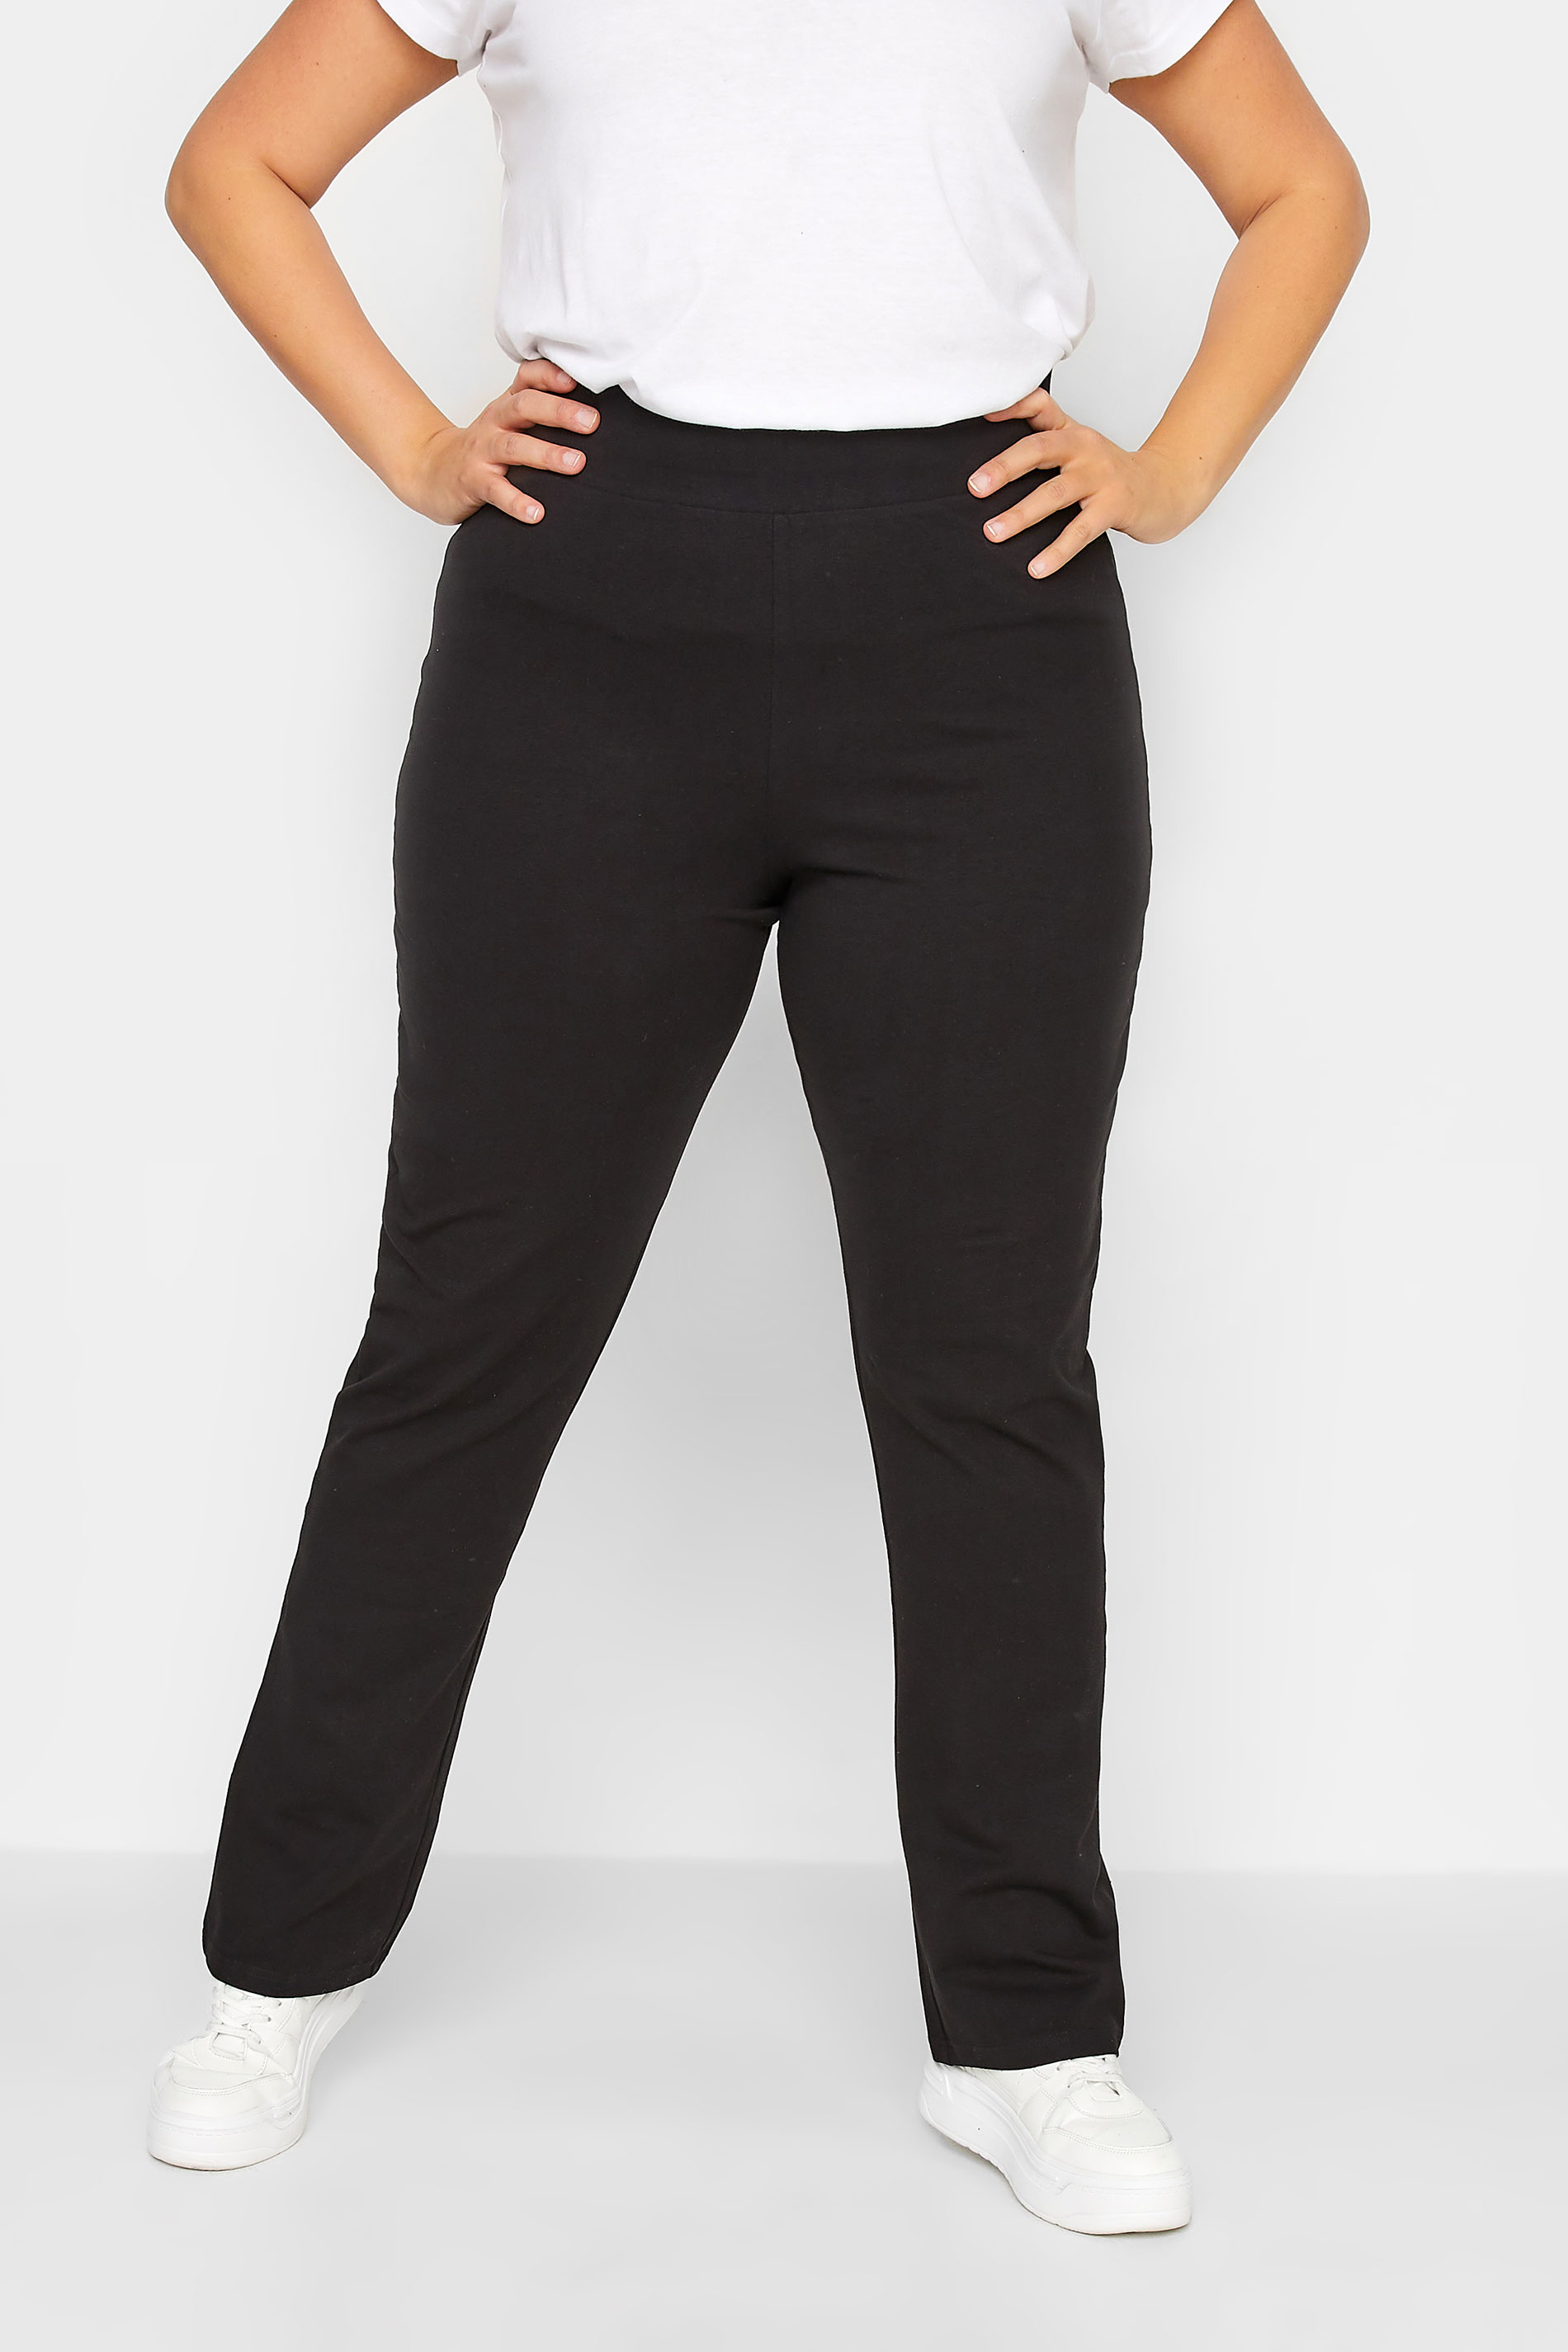 LTS Tall Women's Black Slim Leg Yoga Pants | Long Tall Sally 1